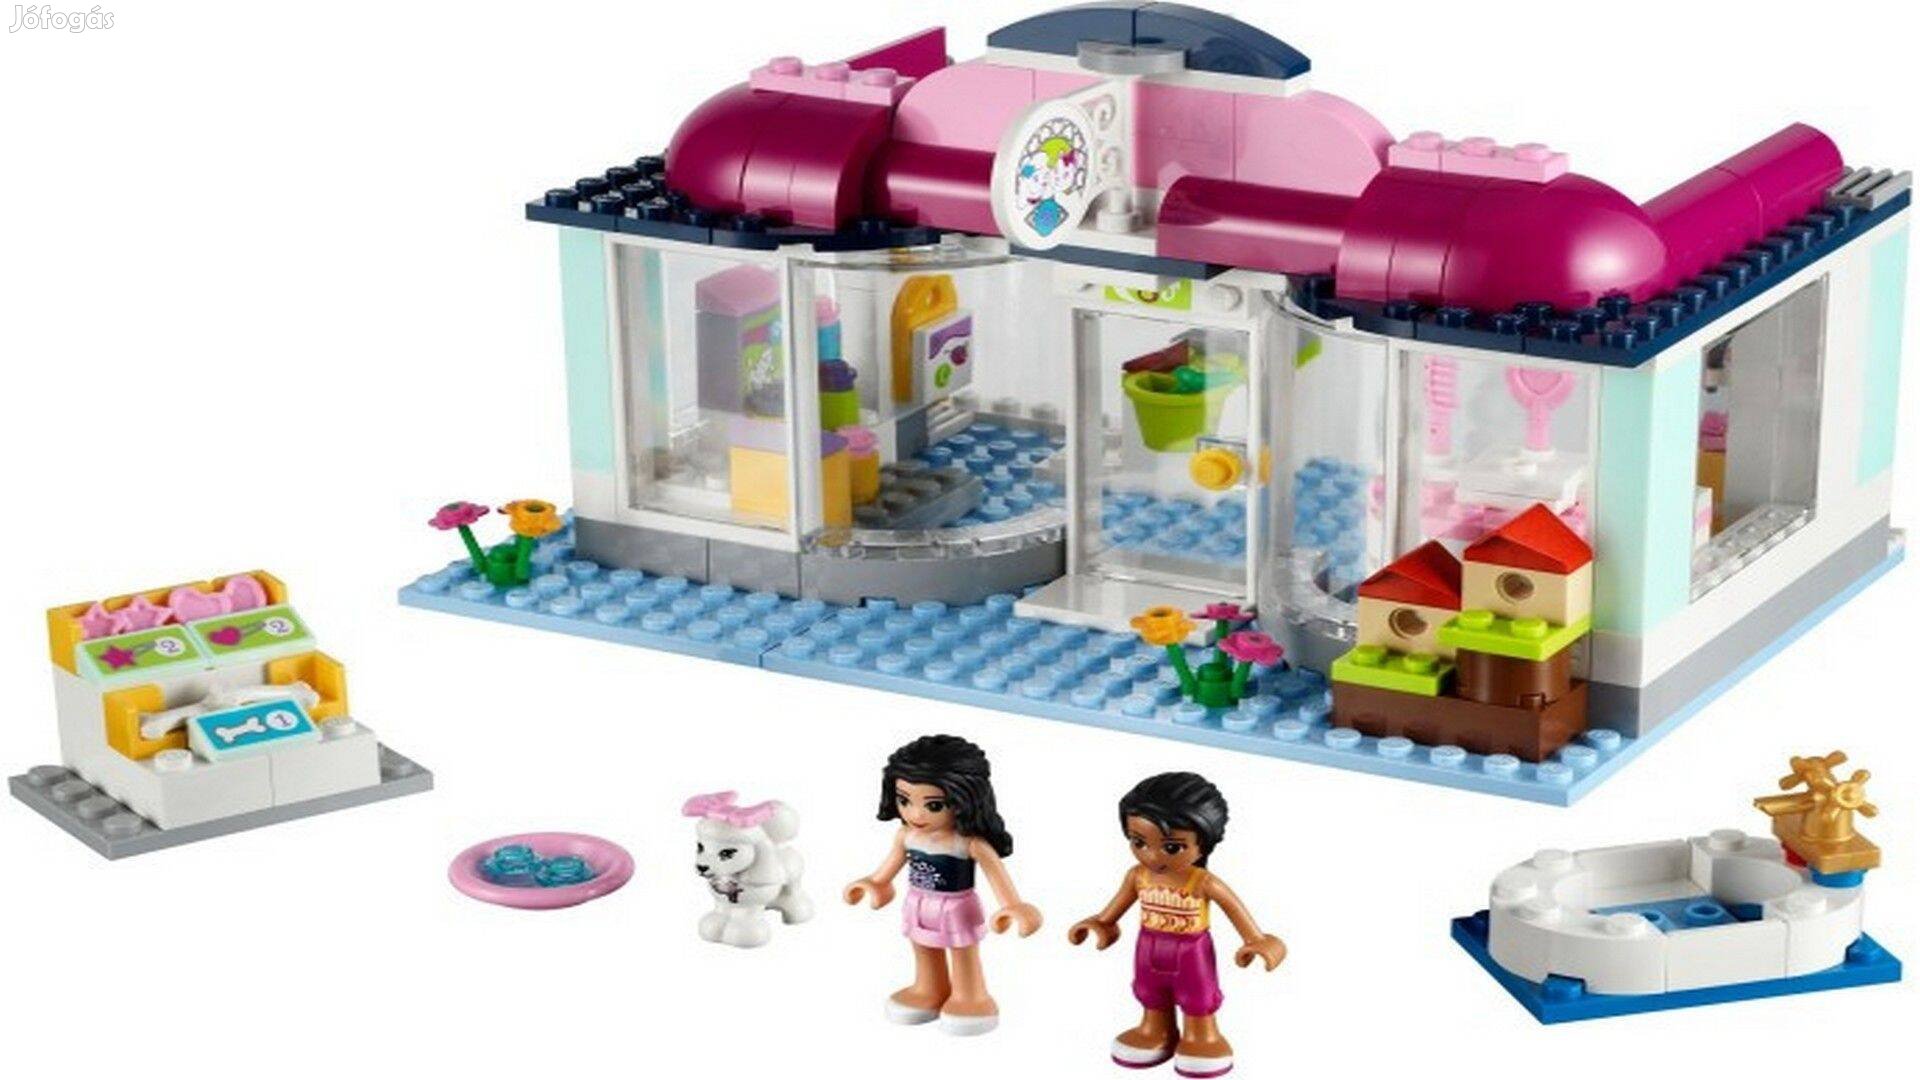 Lego 41007 - Heartlake Pet Salon - Lego Friends készlet